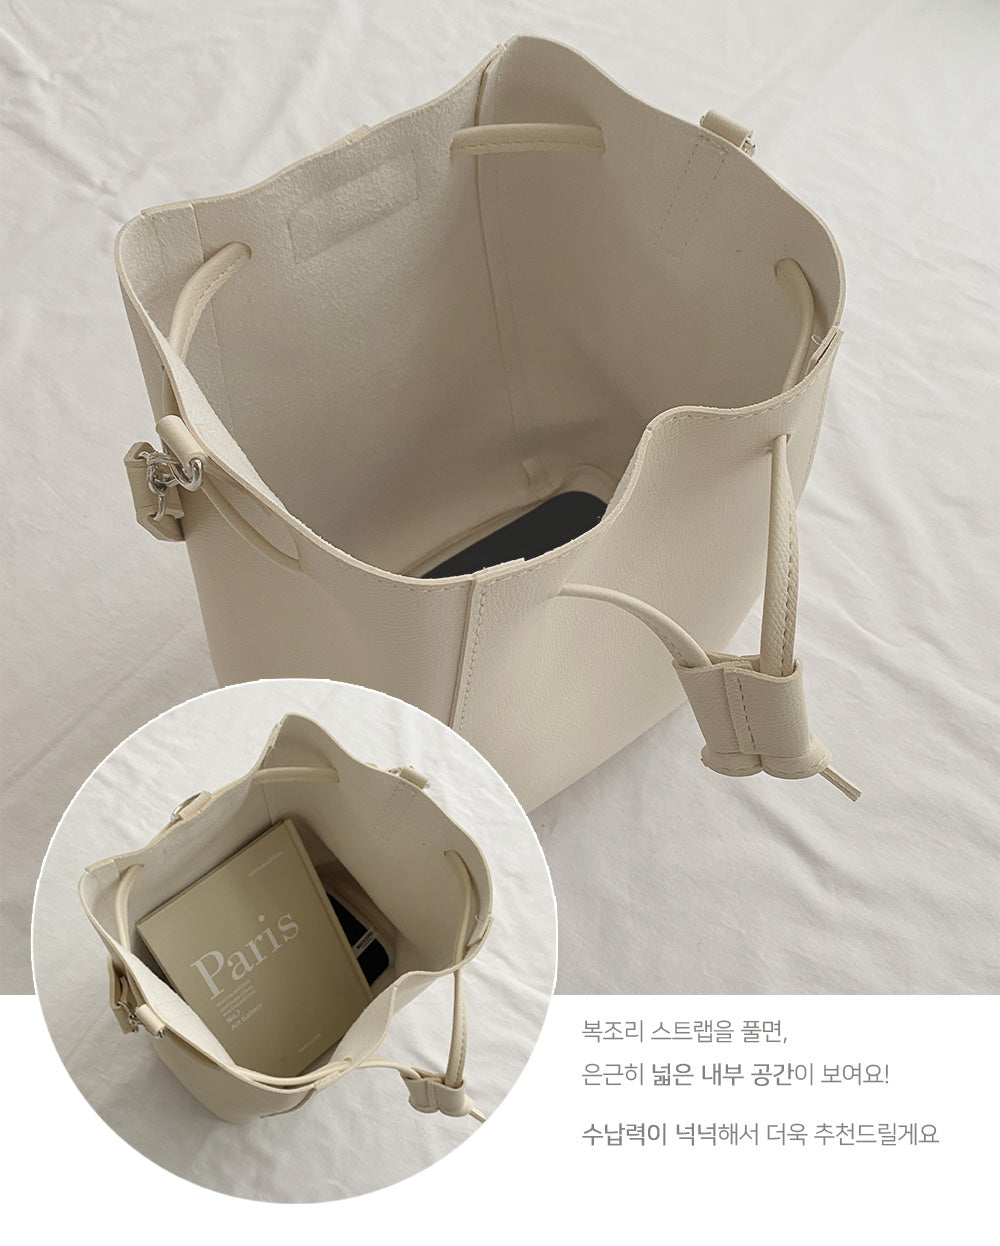 韓國製🇰🇷日常水桶包